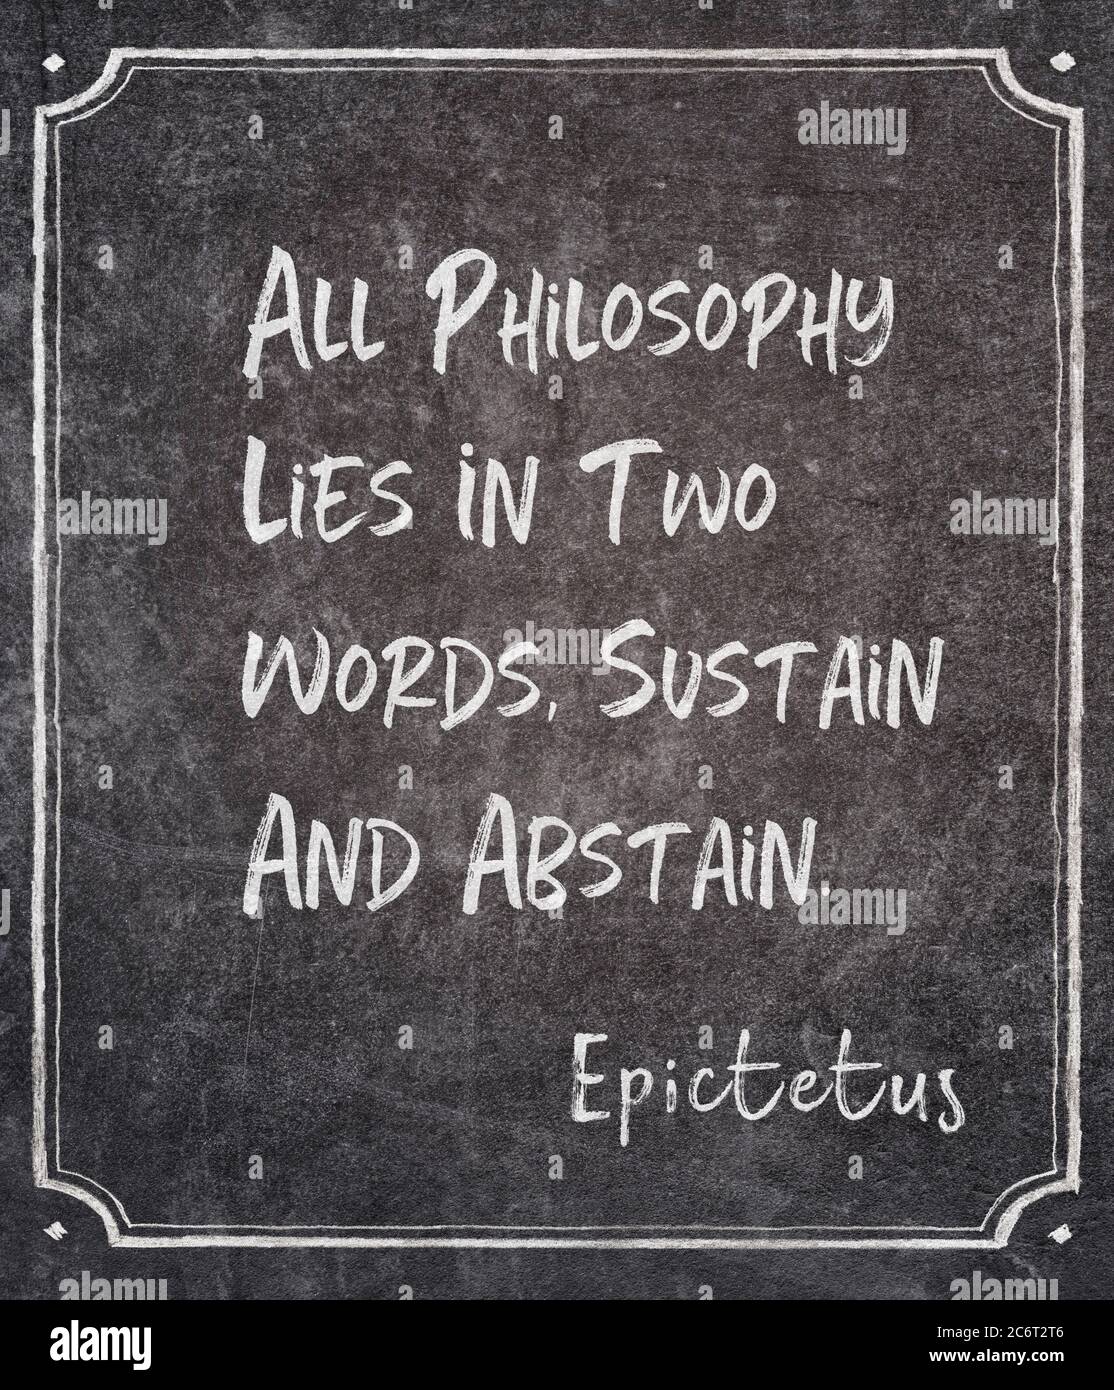 Tutta la filosofia sta in due parole, Sustain e astain - antico filosofo greco Epicteto citazione scritta su lavagna incorniciata Foto Stock